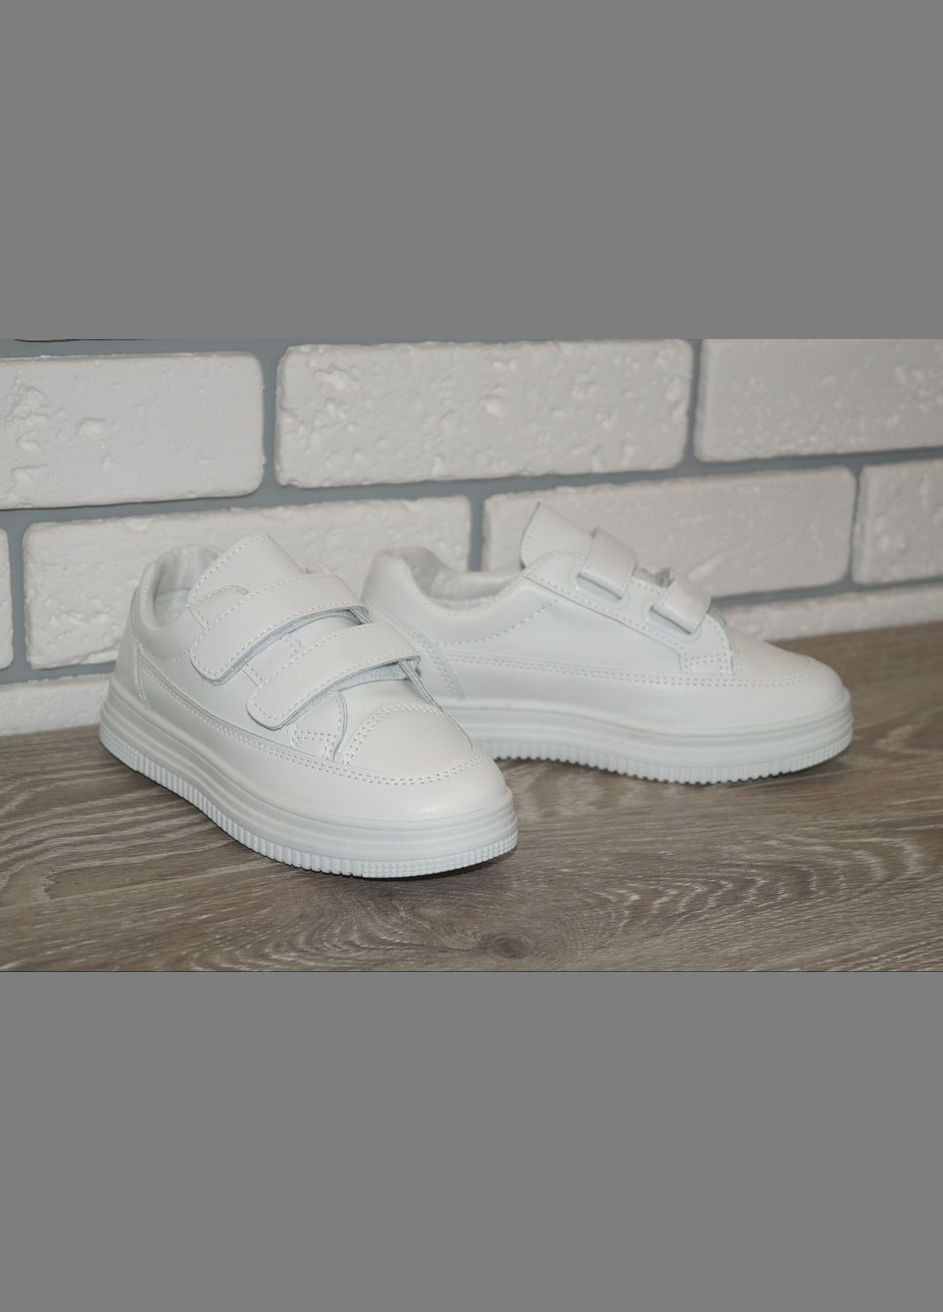 Белые демисезонные кроссовки детские белые ABA 206-1